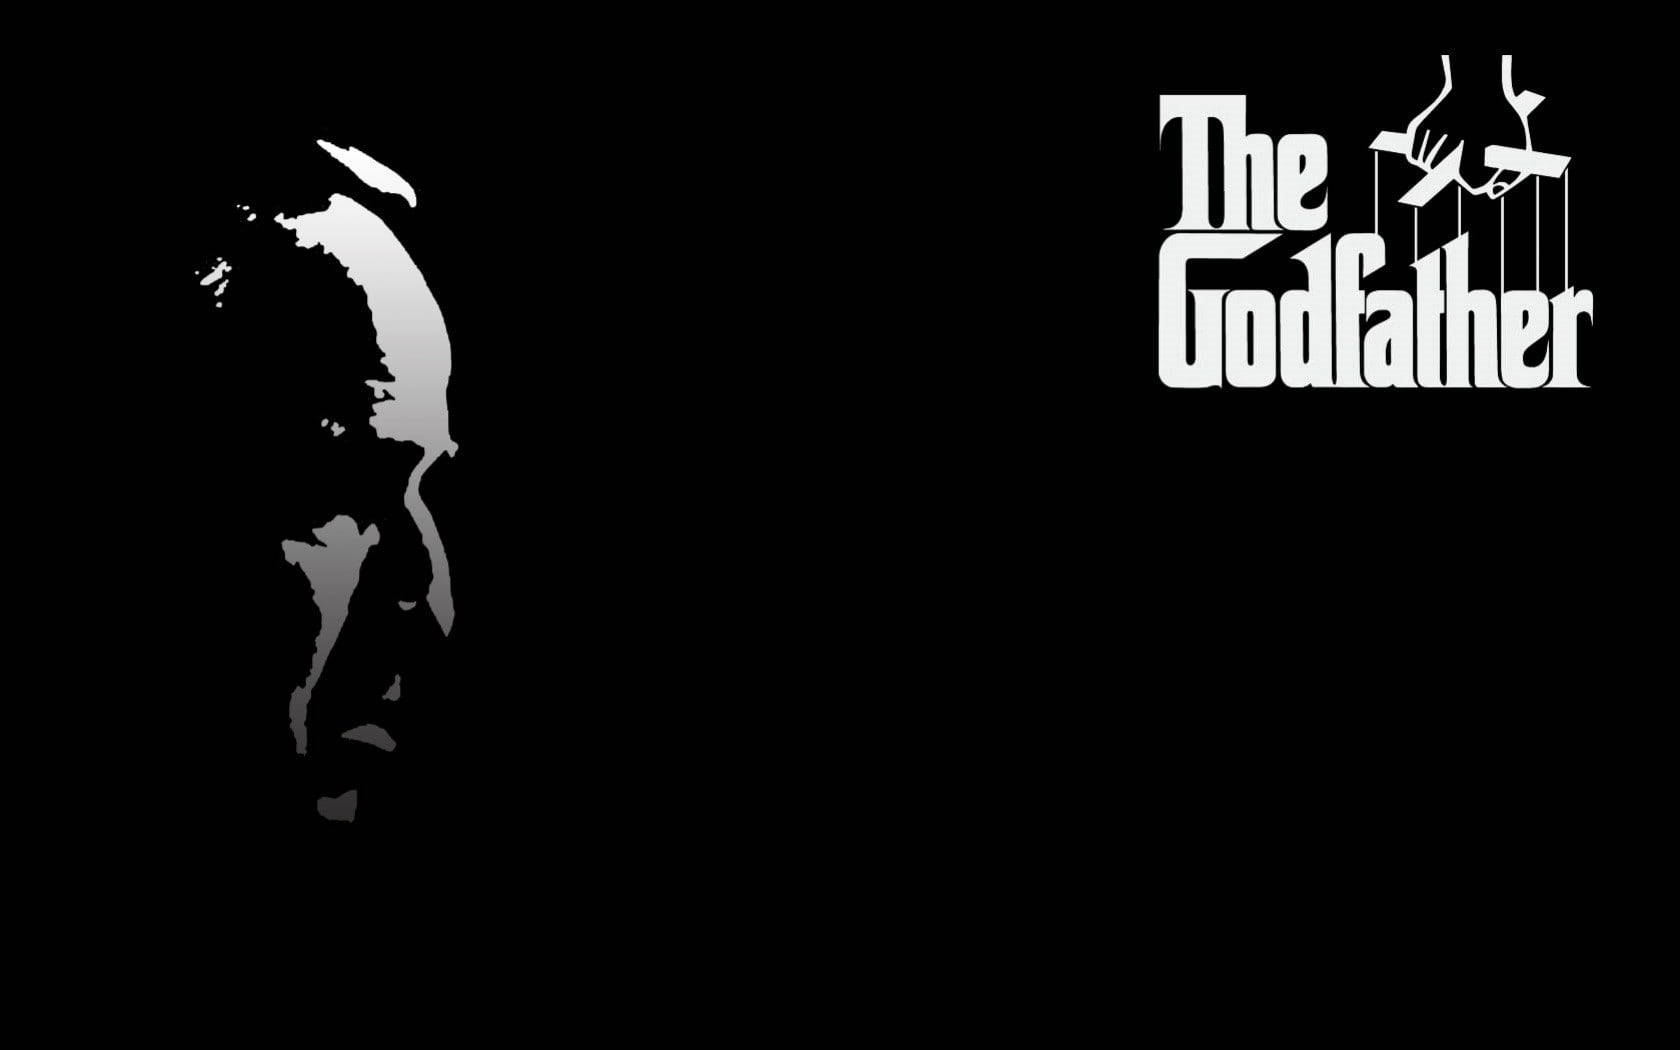 Mafia Film The Godfather Plakat Wallpaper